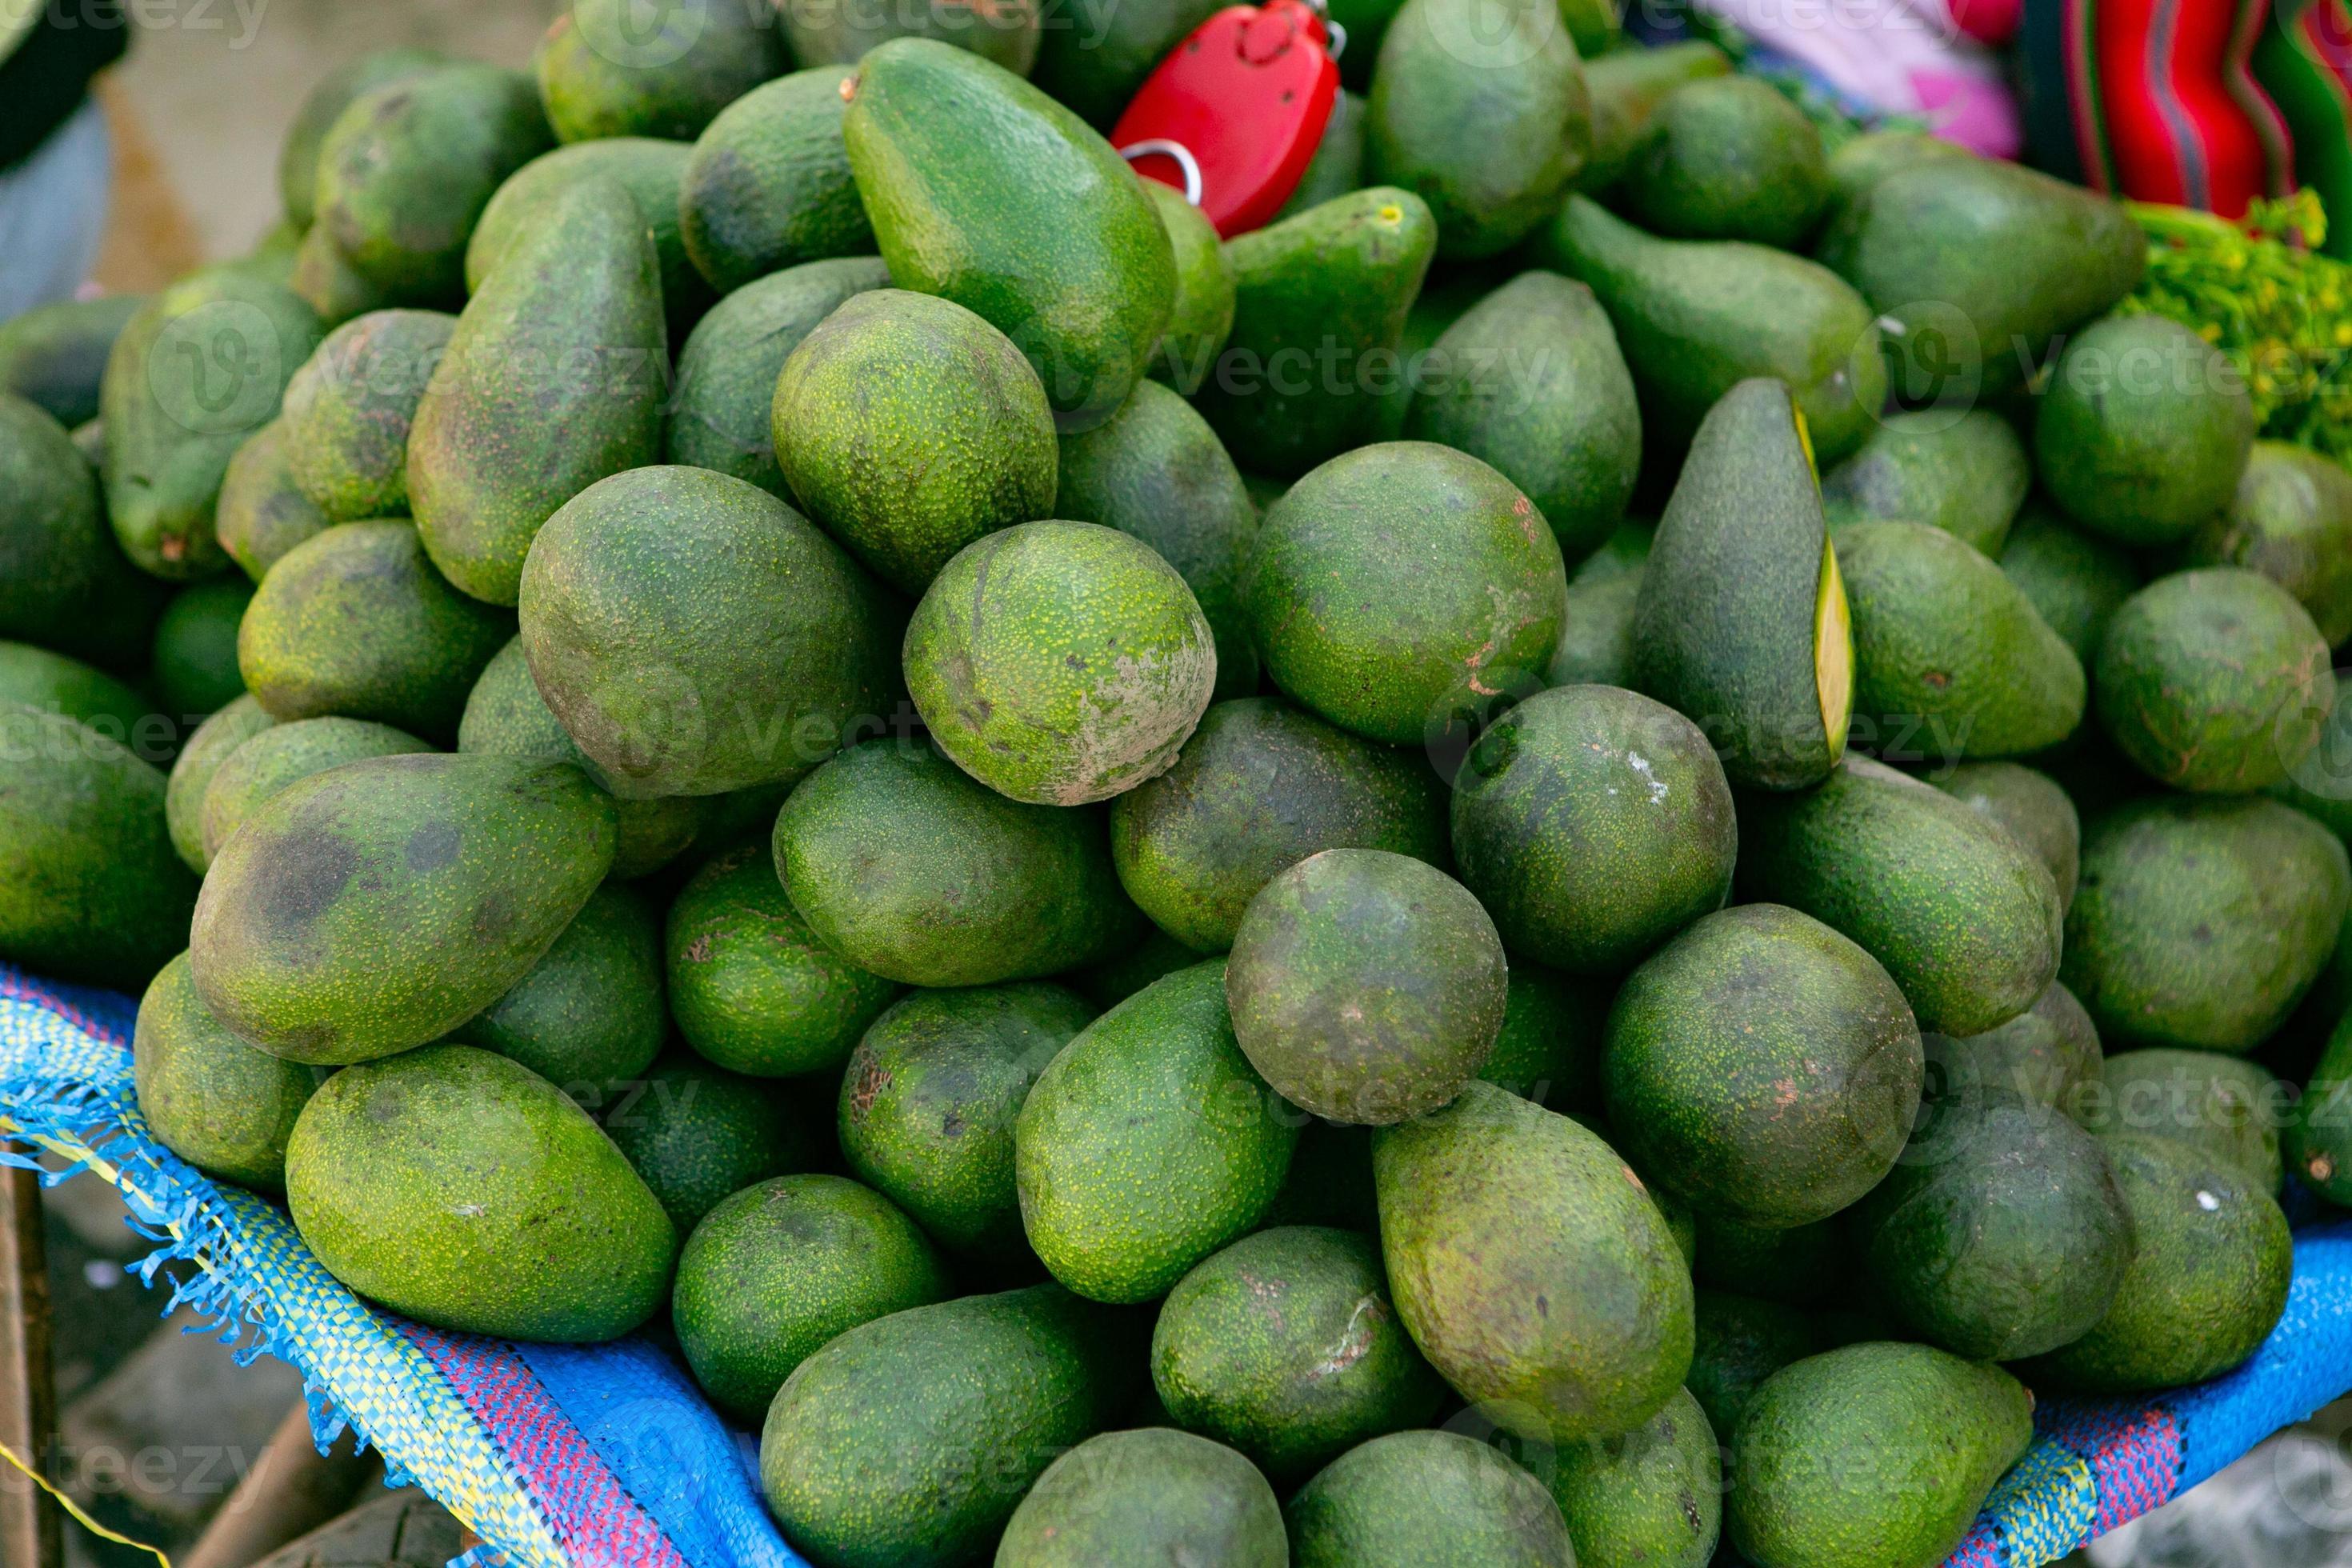 frutta e verdura fresca al mercato locale di lima, in perù. mercato delle  verdure vendute dai contadini locali. 7925809 Stock Photo su Vecteezy